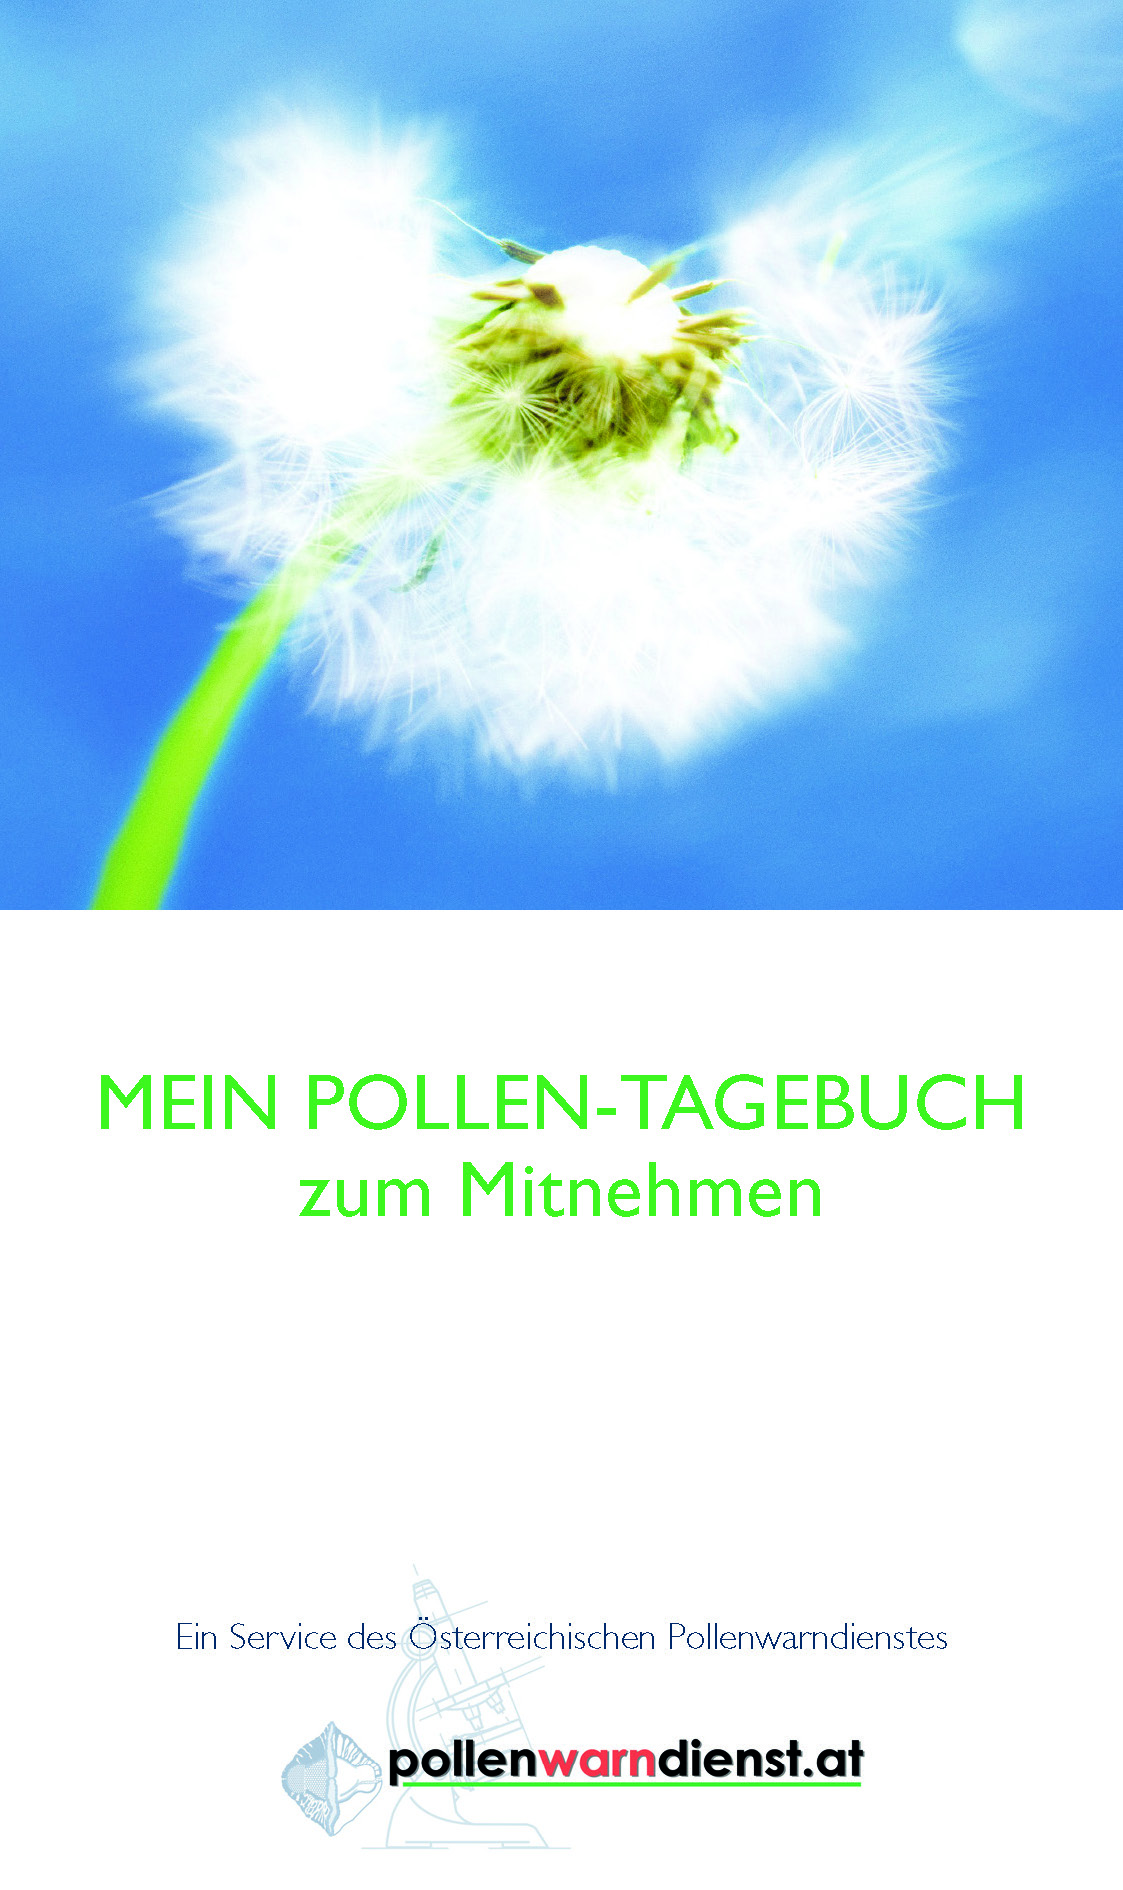 Das Titelblatt eines Pollen-Tagebuchs. 